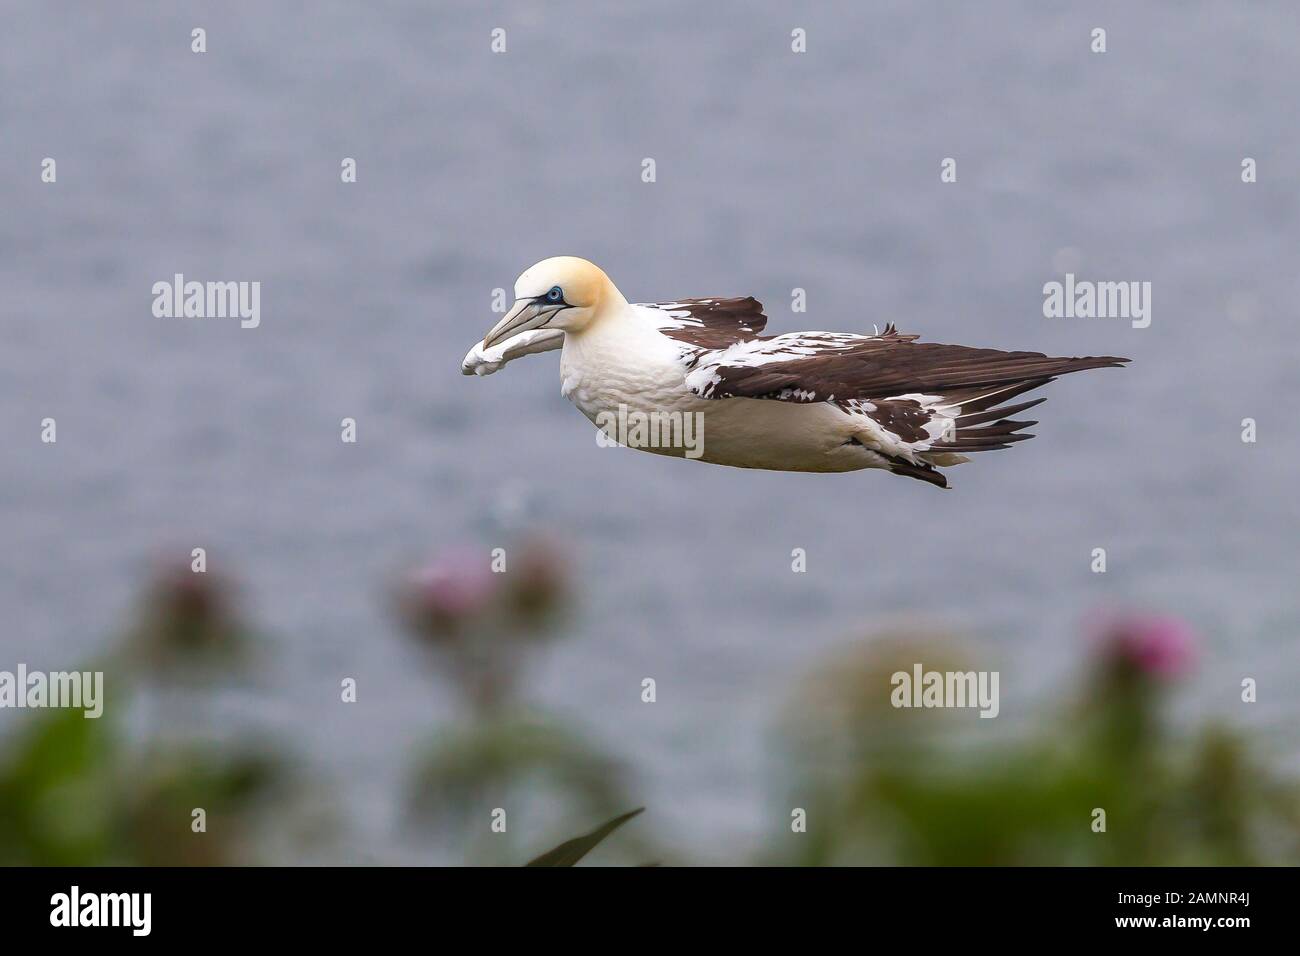 Nahe, wilde britische nördliche Gannet seabird (Morus bassanus), isoliert im Flug in der Luft. Küsten-Gannet fliegen frei in Himmel, Meer Wasser Hintergrund. Seevögel. Stockfoto